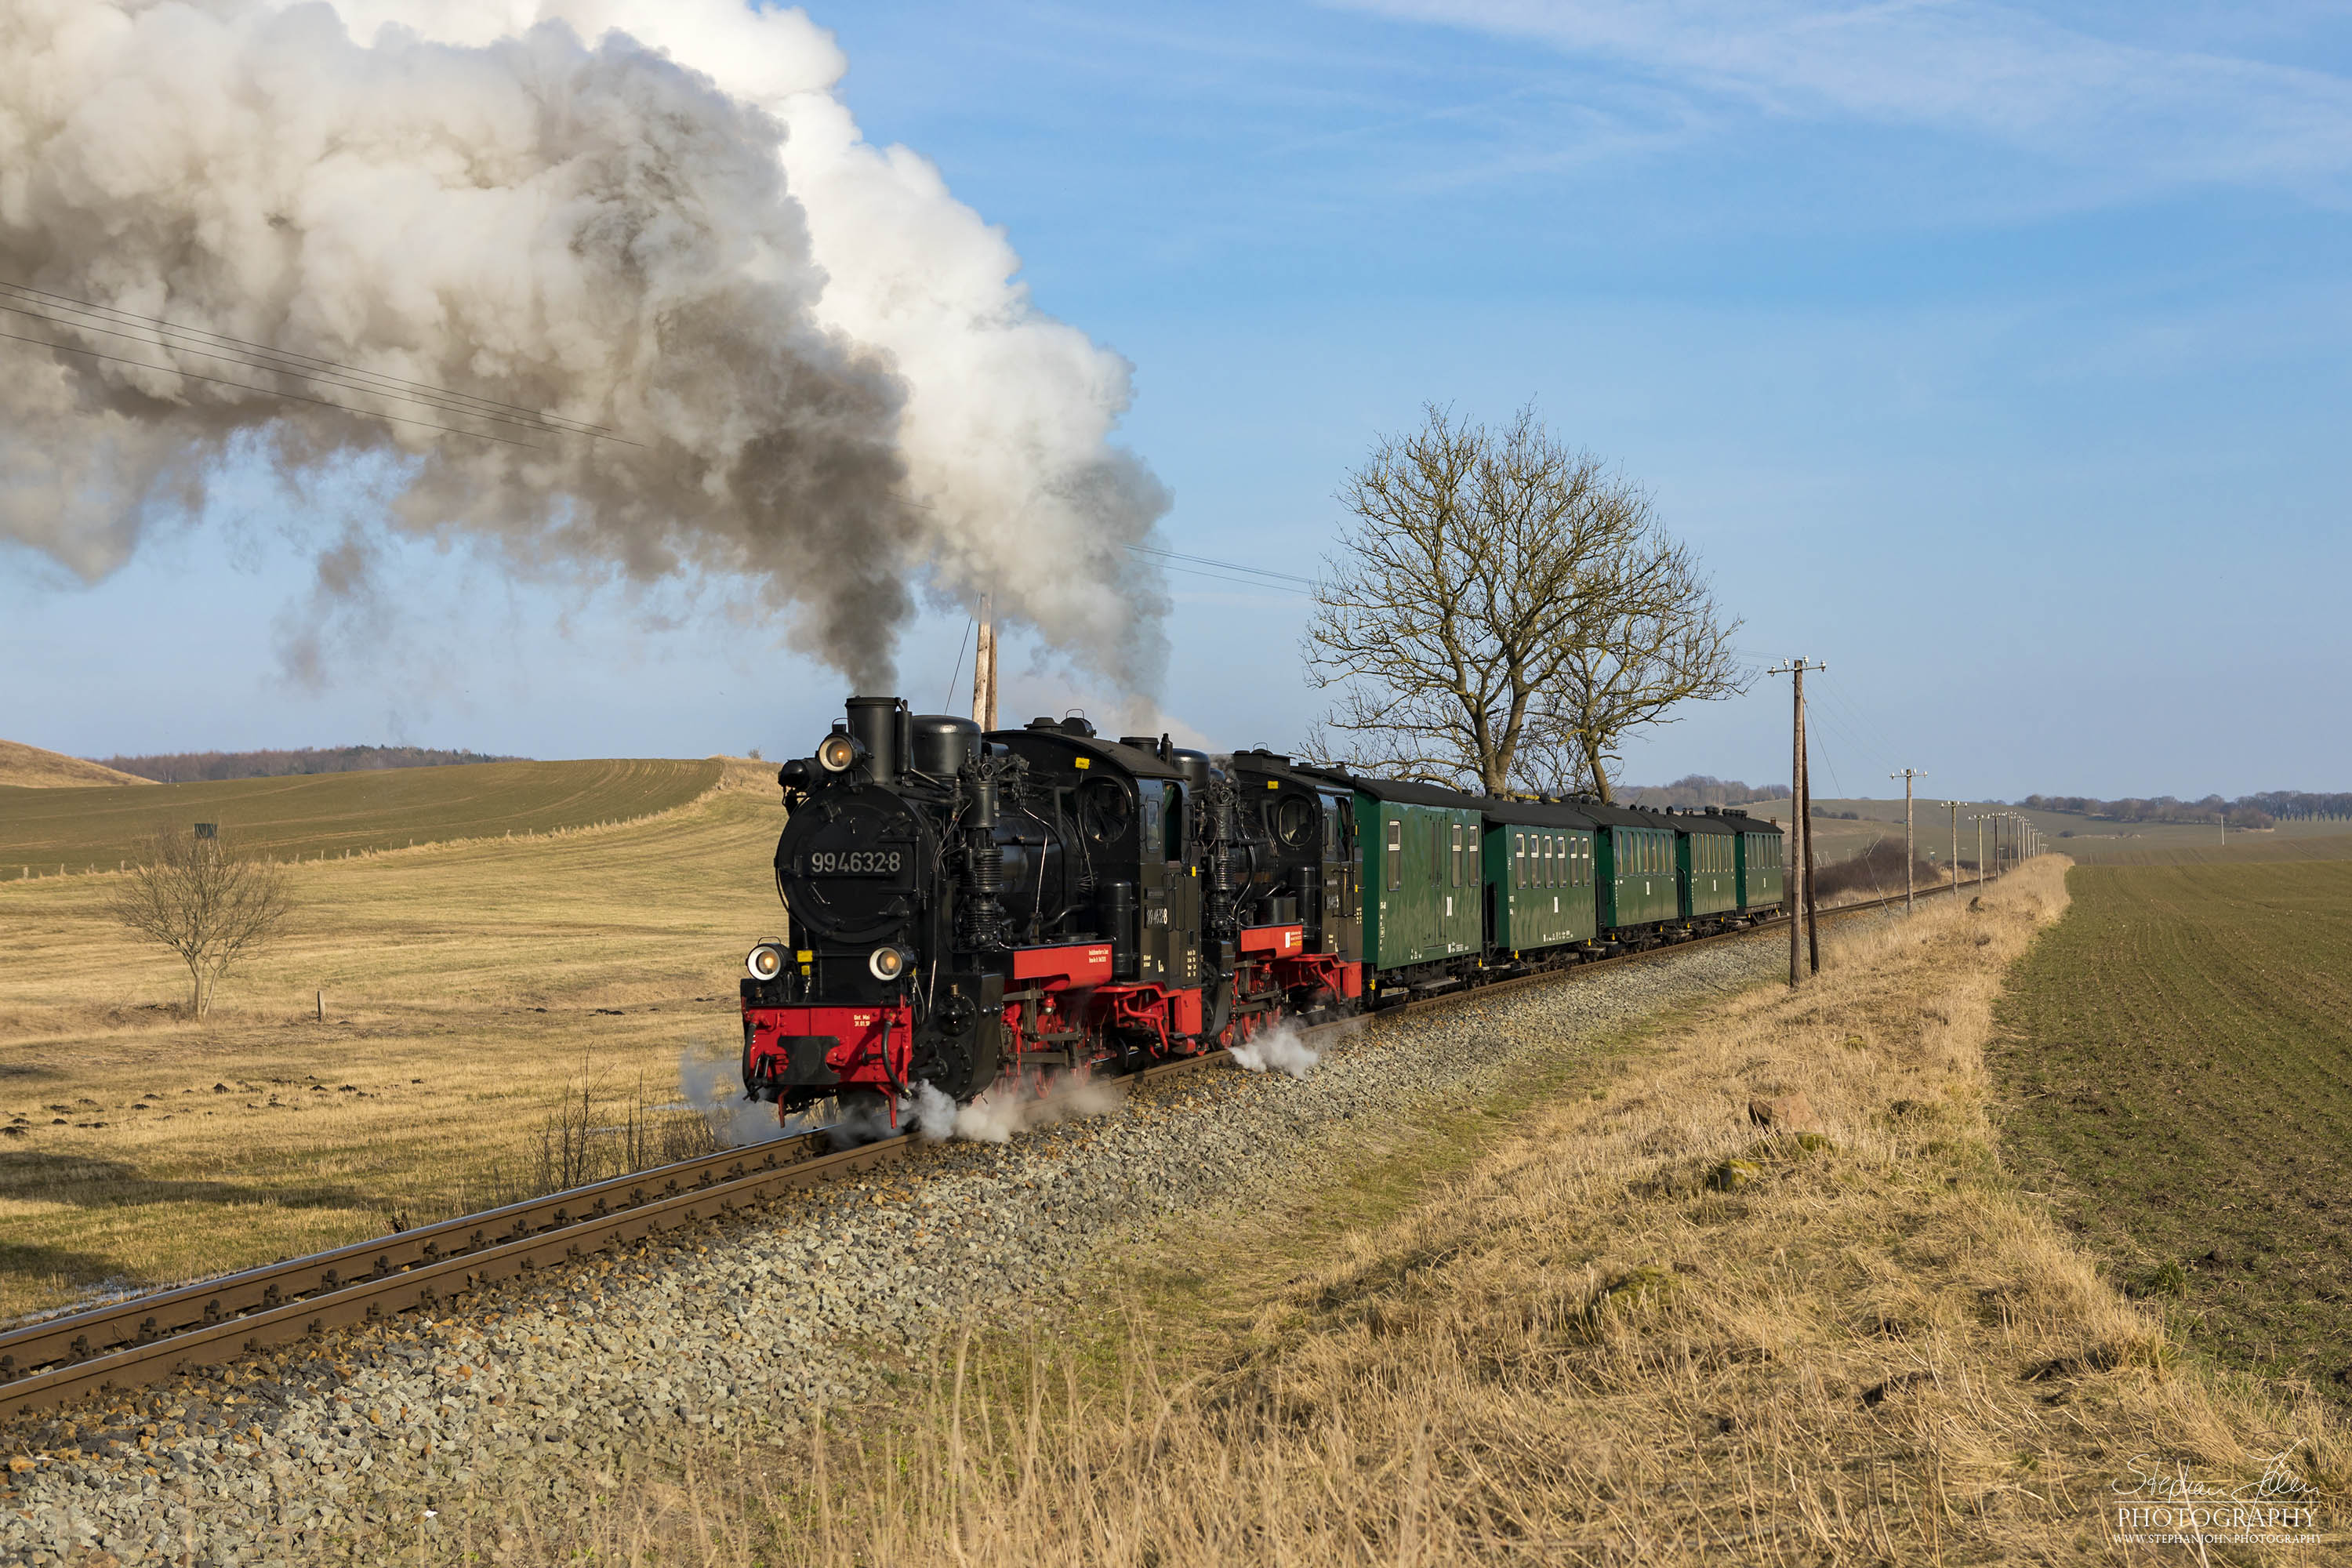 Seit der Hauptuntersuchung im Januar 2018 hat die Rügen-Lok 99 4632-8 (Vulcan-Lok) wieder eine schwarze Reichsbahnlackierung. Die Rügen-Lok 99 4633-6 hat noch in diesem Jahr Fristablauf und kommt dann in grüner Farbgebung wieder. Beide Rügenloks in schwarzer Farbgebung ist also nur ein kurzes Vergnügen. Hier zieht die Lok 99 4633-6 mit Vorspannlok 99 4632-8 zwischen Seelvitz und Posewald einen Personenzug in Richtung Putbus. 